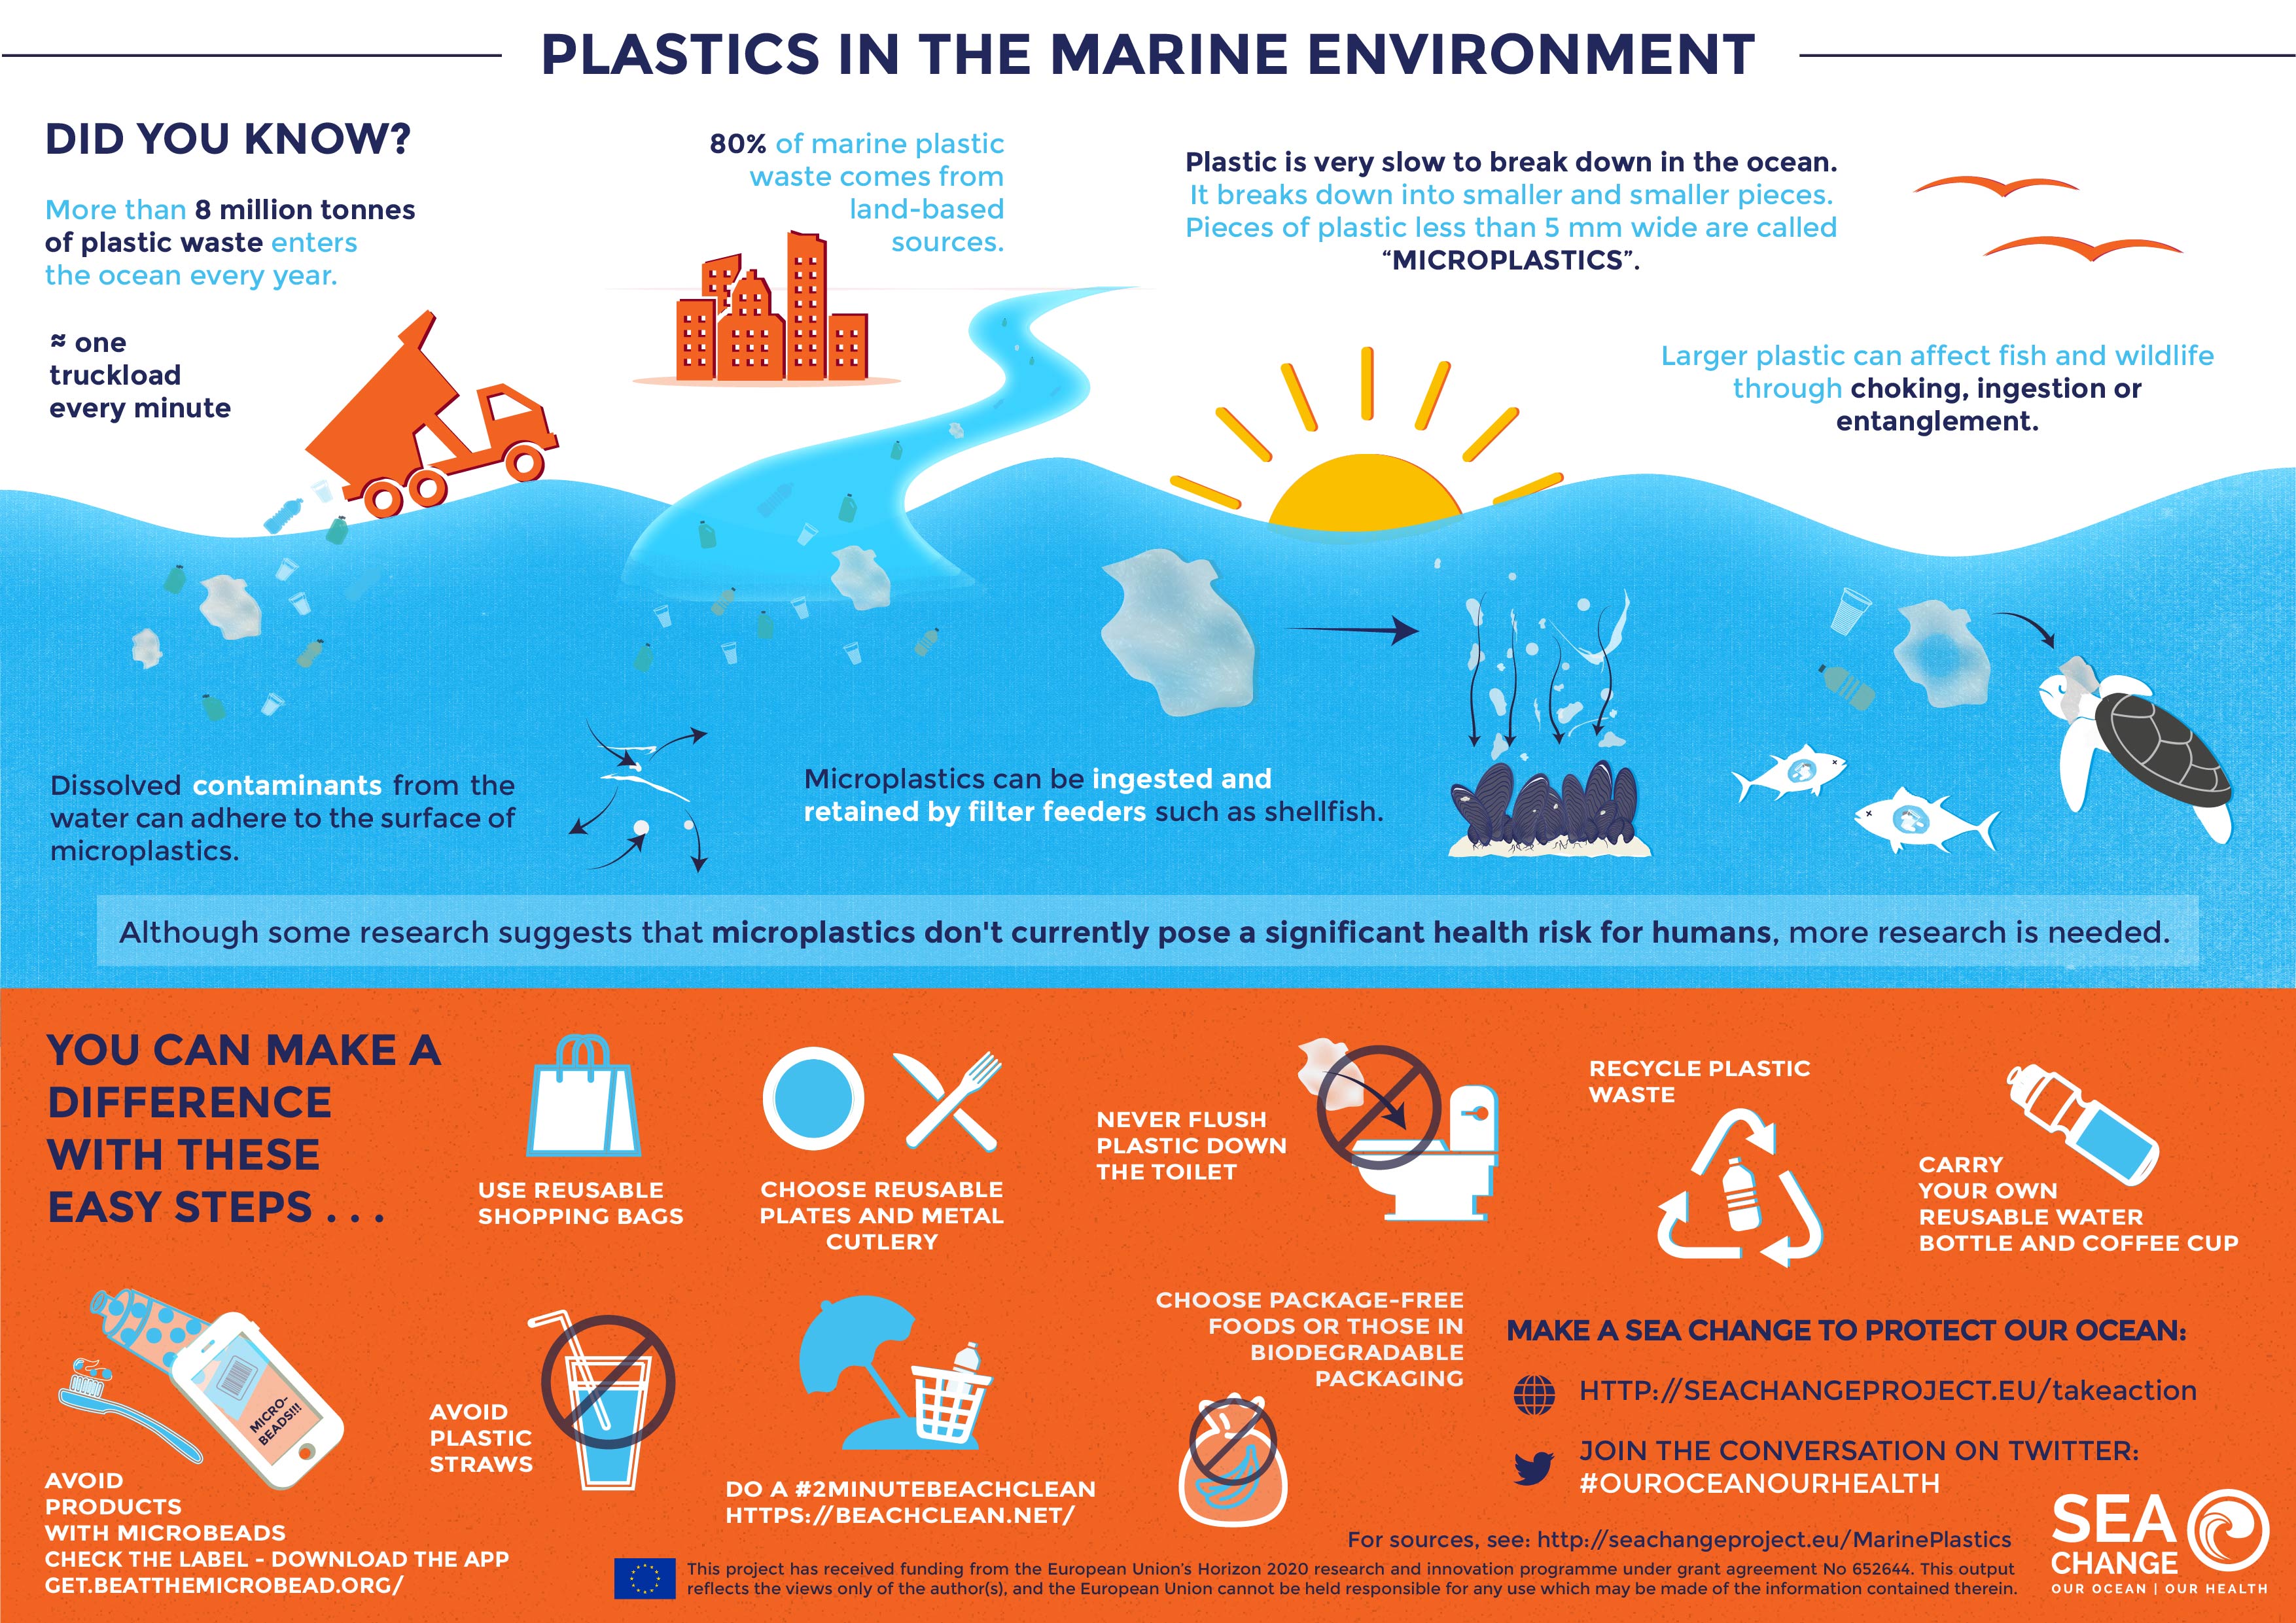 Plastics in the marine environment, oceans